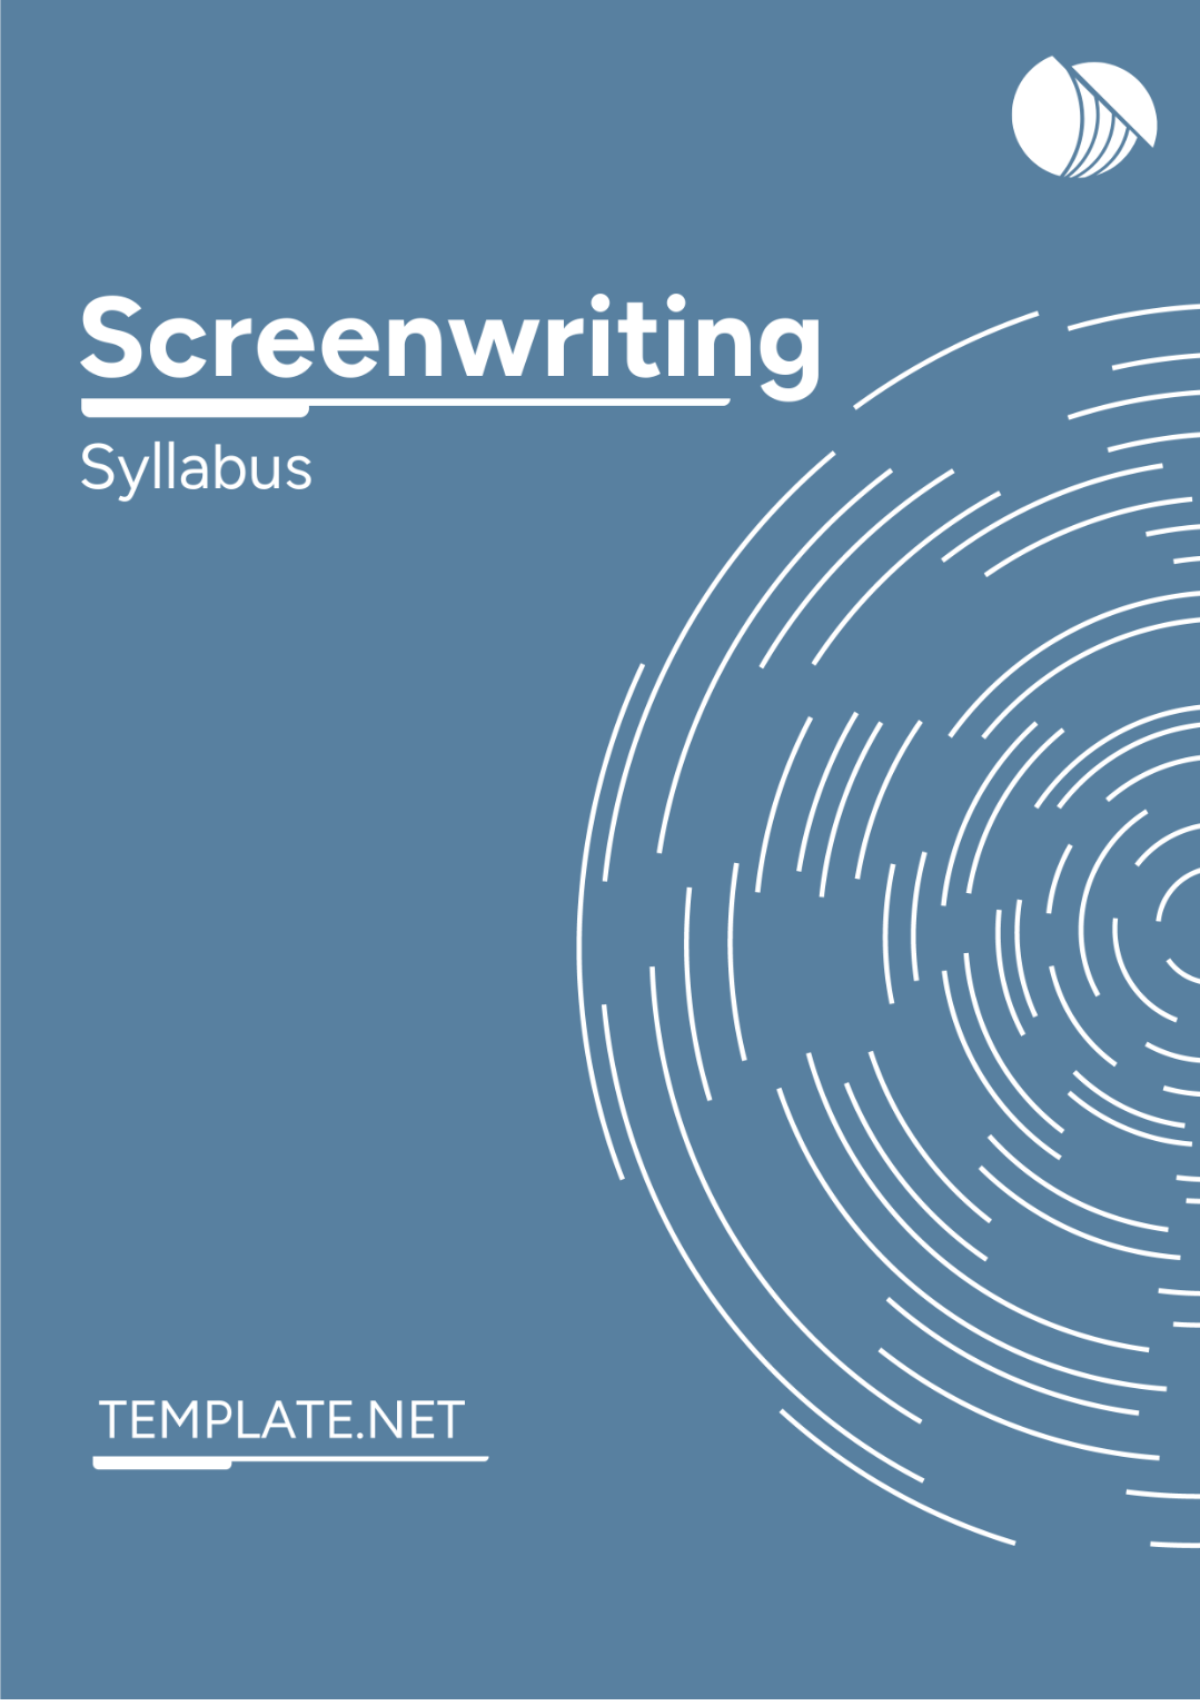 Screenwriting Syllabus Template